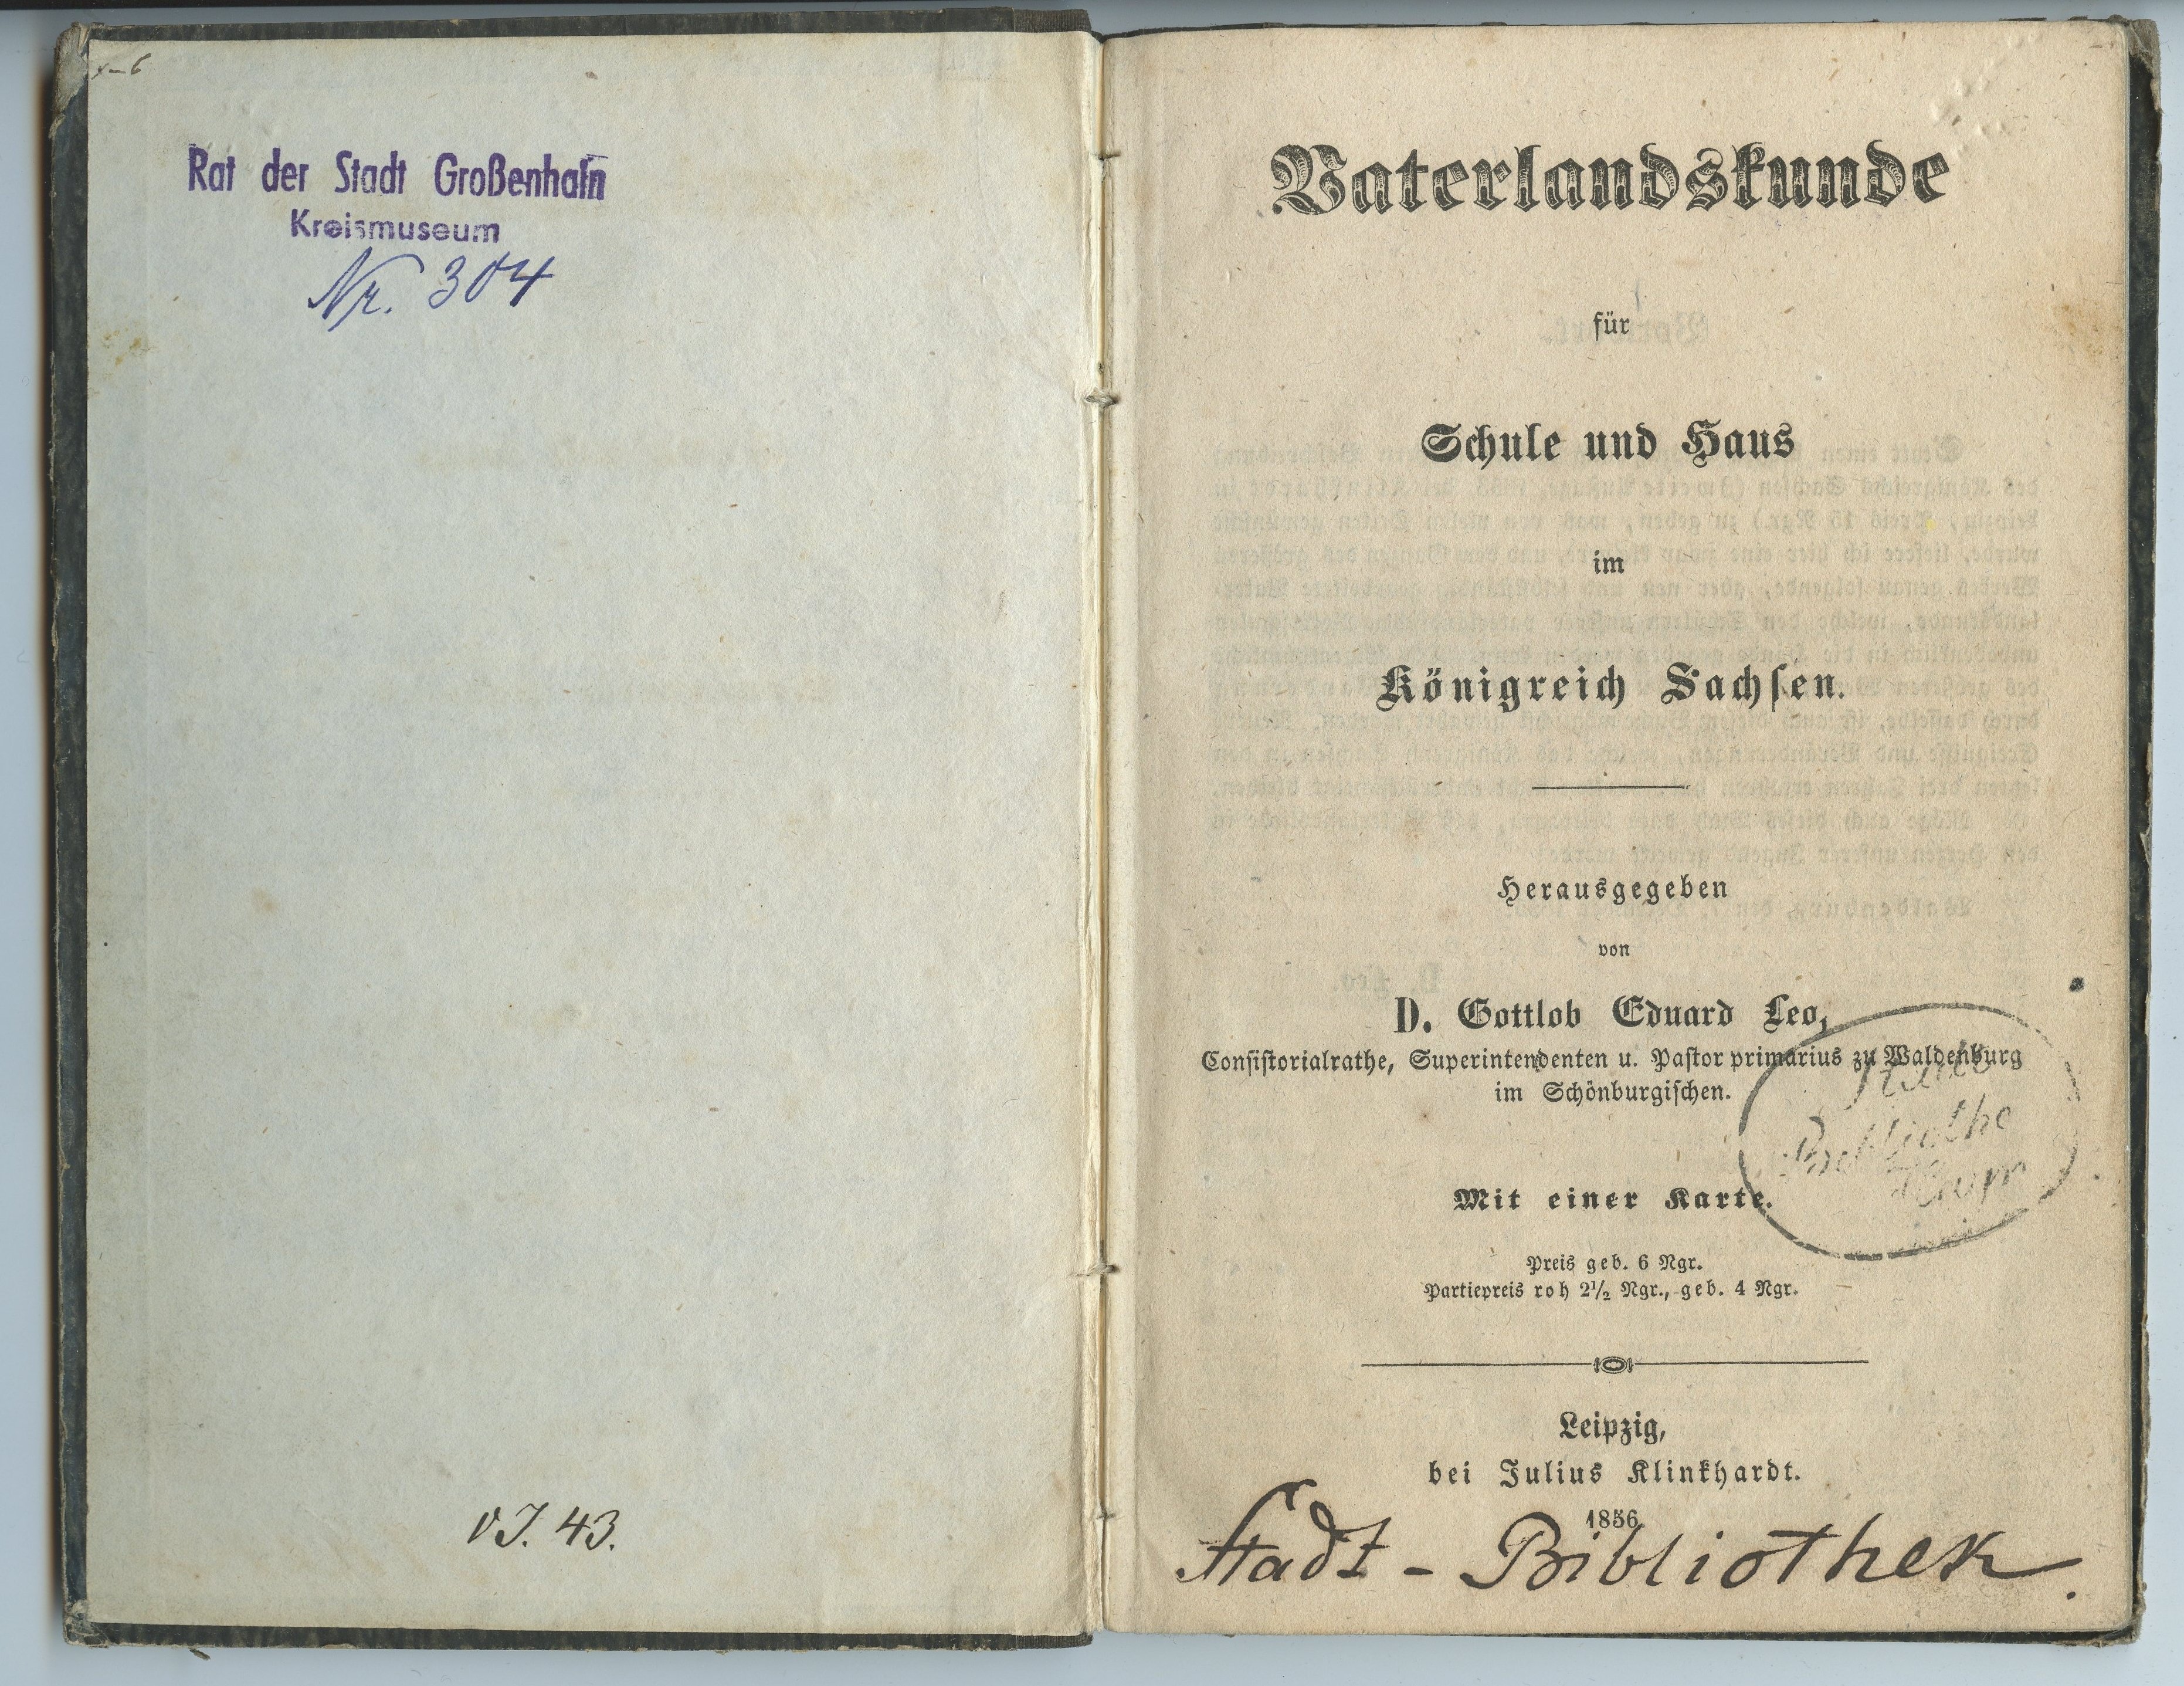 Leo, Gottlob Eduard (Hrsg.): Vaterlandskunde für Schule und Haus im Königreich Sachsen, 1856 (Museum Alte Lateinschule CC BY-NC-SA)